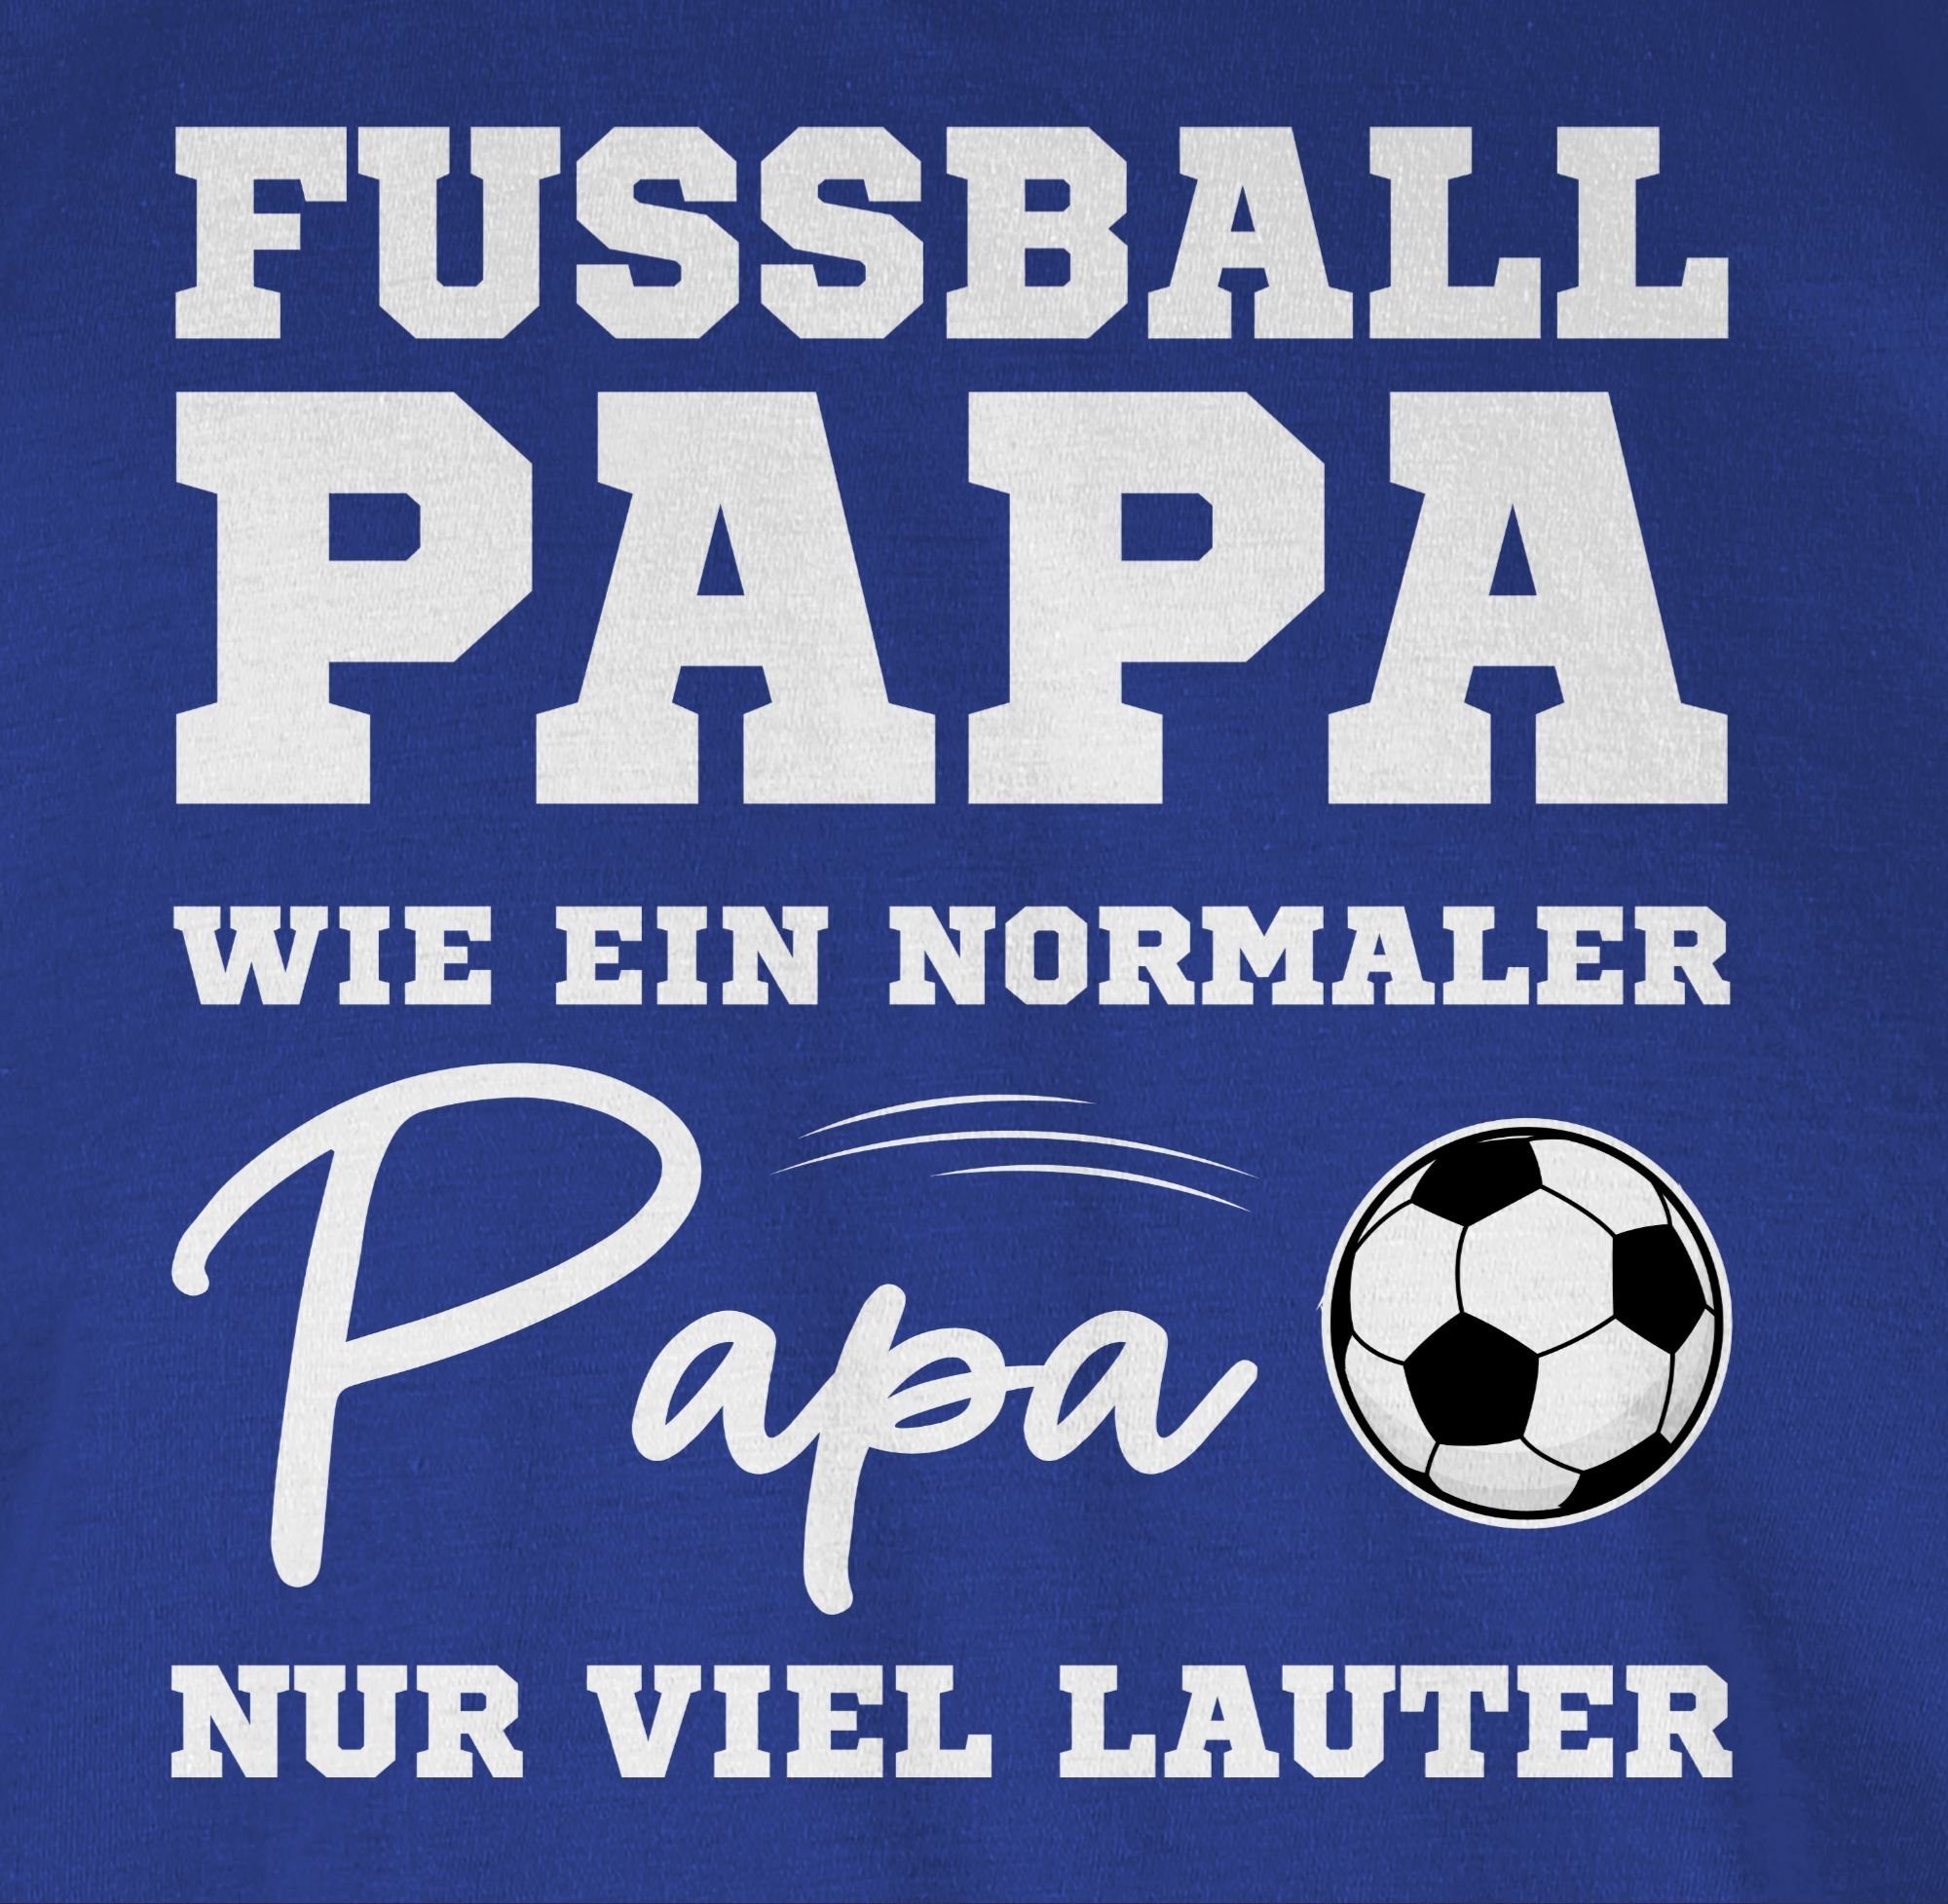 Shirtracer T-Shirt Fußball 03 EM nur wie Papa viel ein Papa lauter normaler Fussball weiß 2024 Royalblau